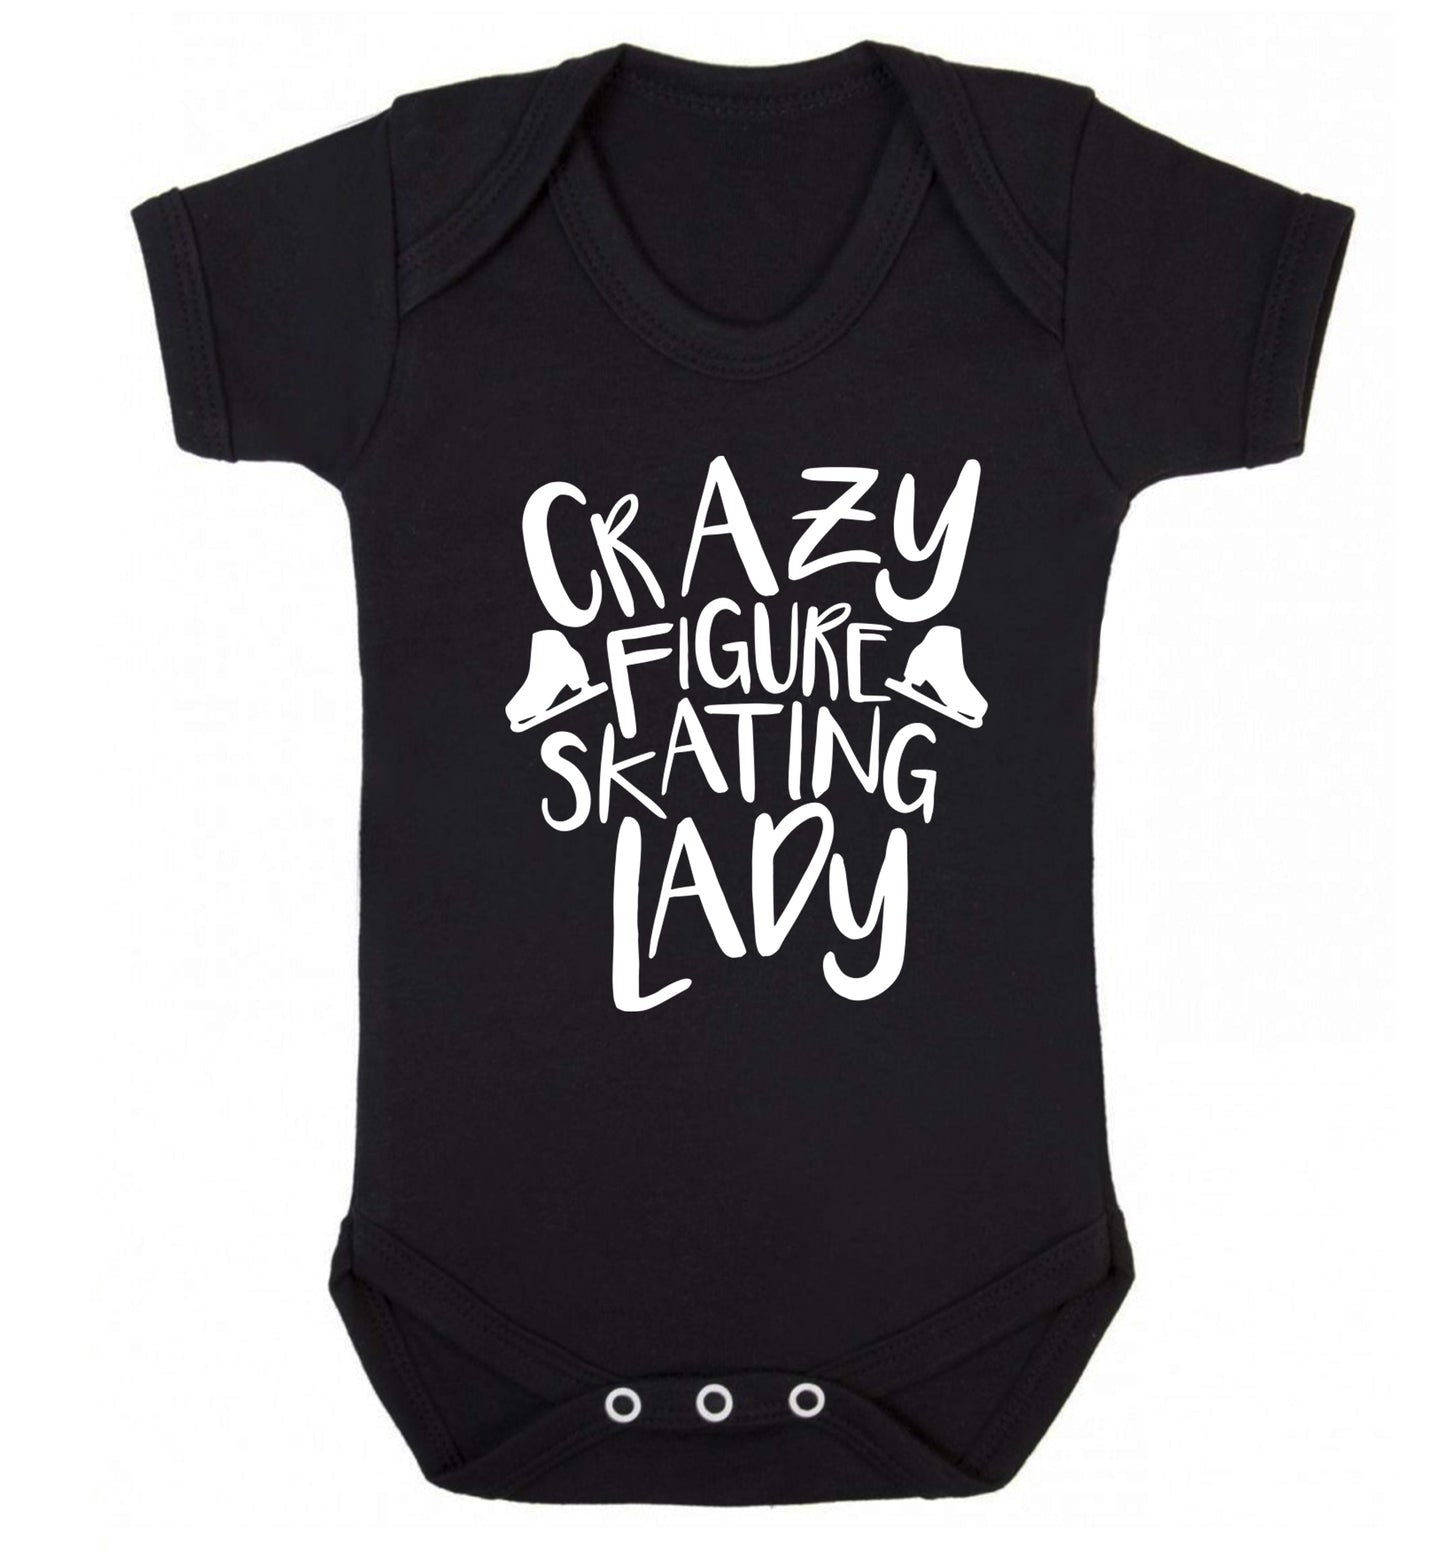 Crazy figure skating lady Baby Vest black 18-24 months